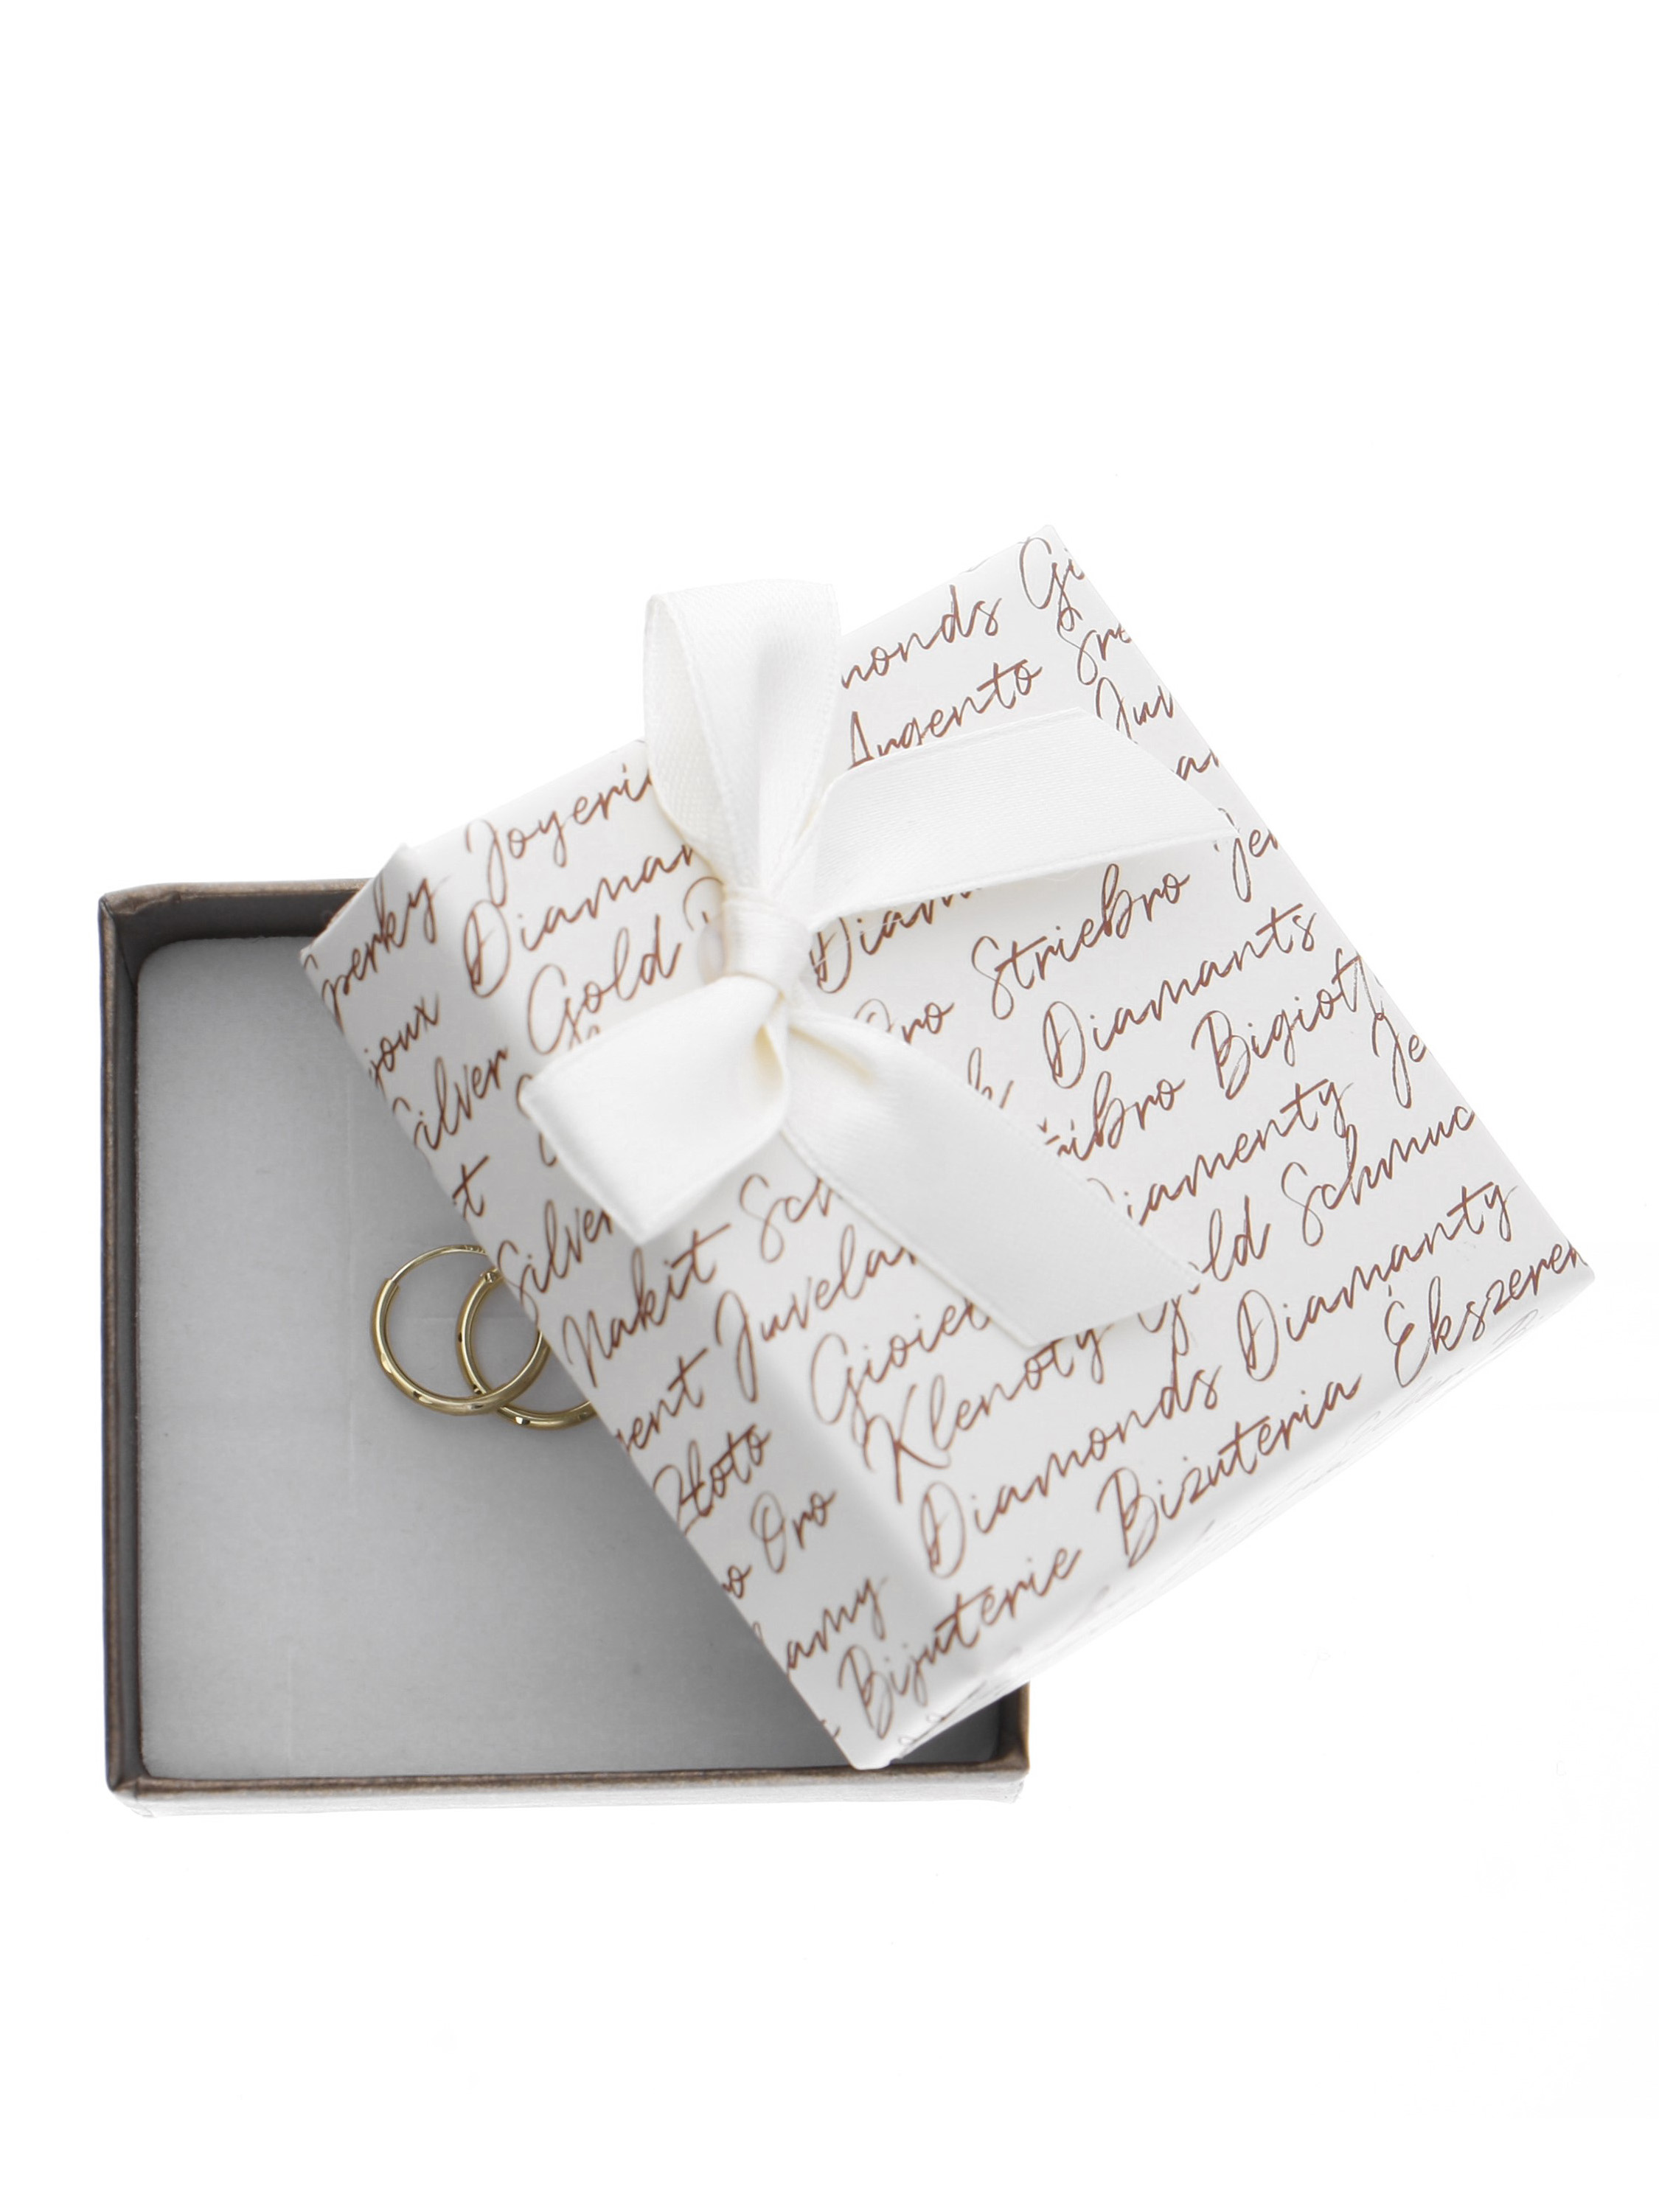 Edle Geschenkverpackung mit schönem Motiv und weißer Satainschleife | Verpackung